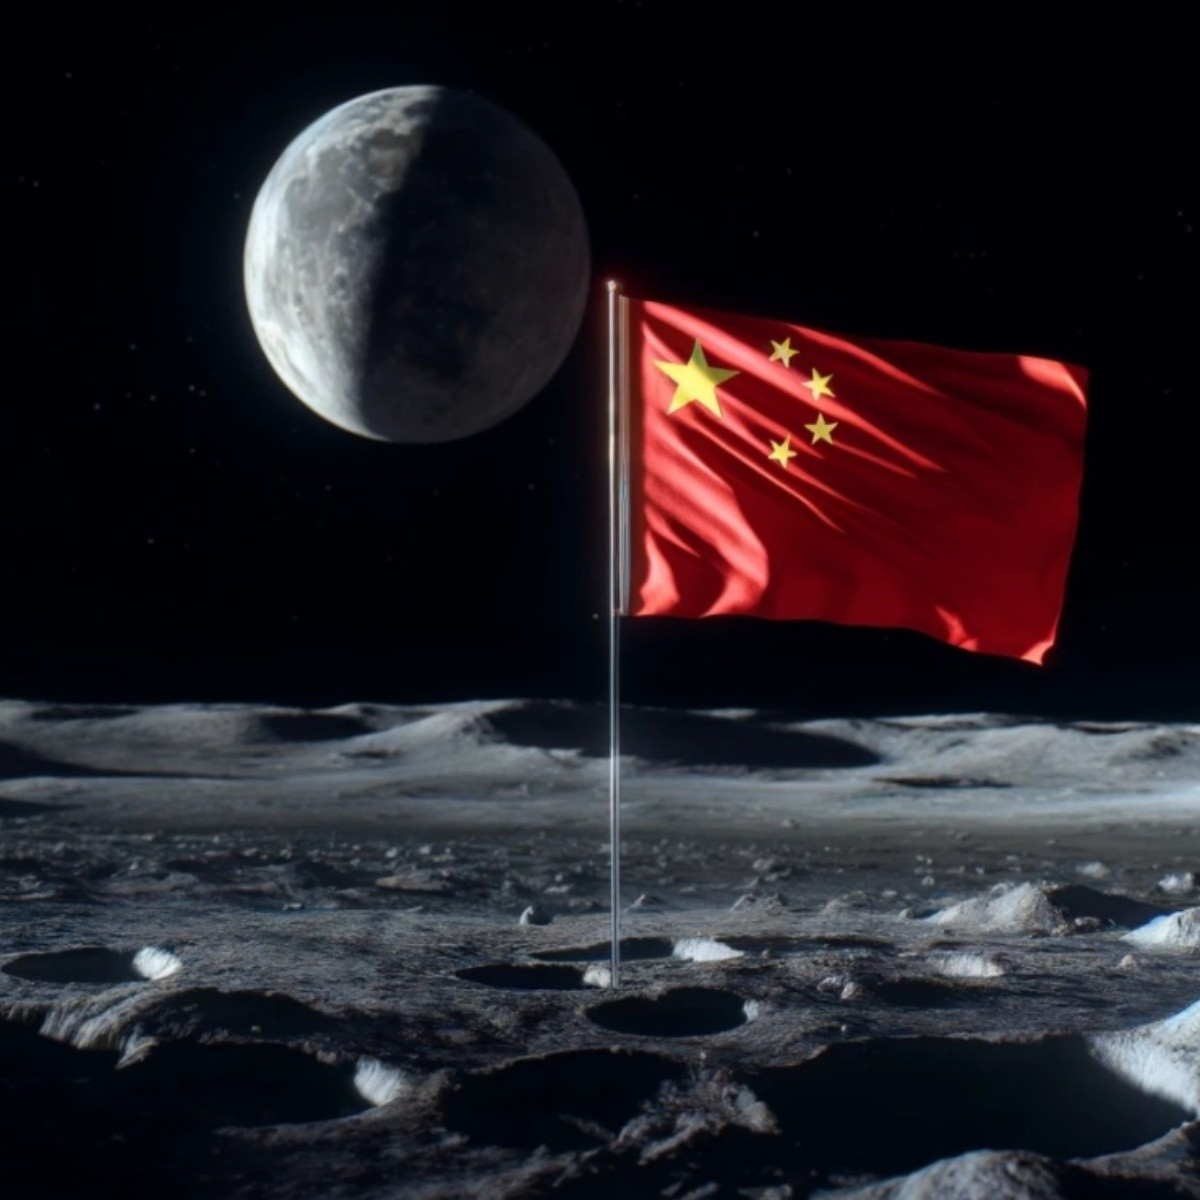 autoridades de la nasa advierten sobre actividades militares encubiertas de china en el espacio